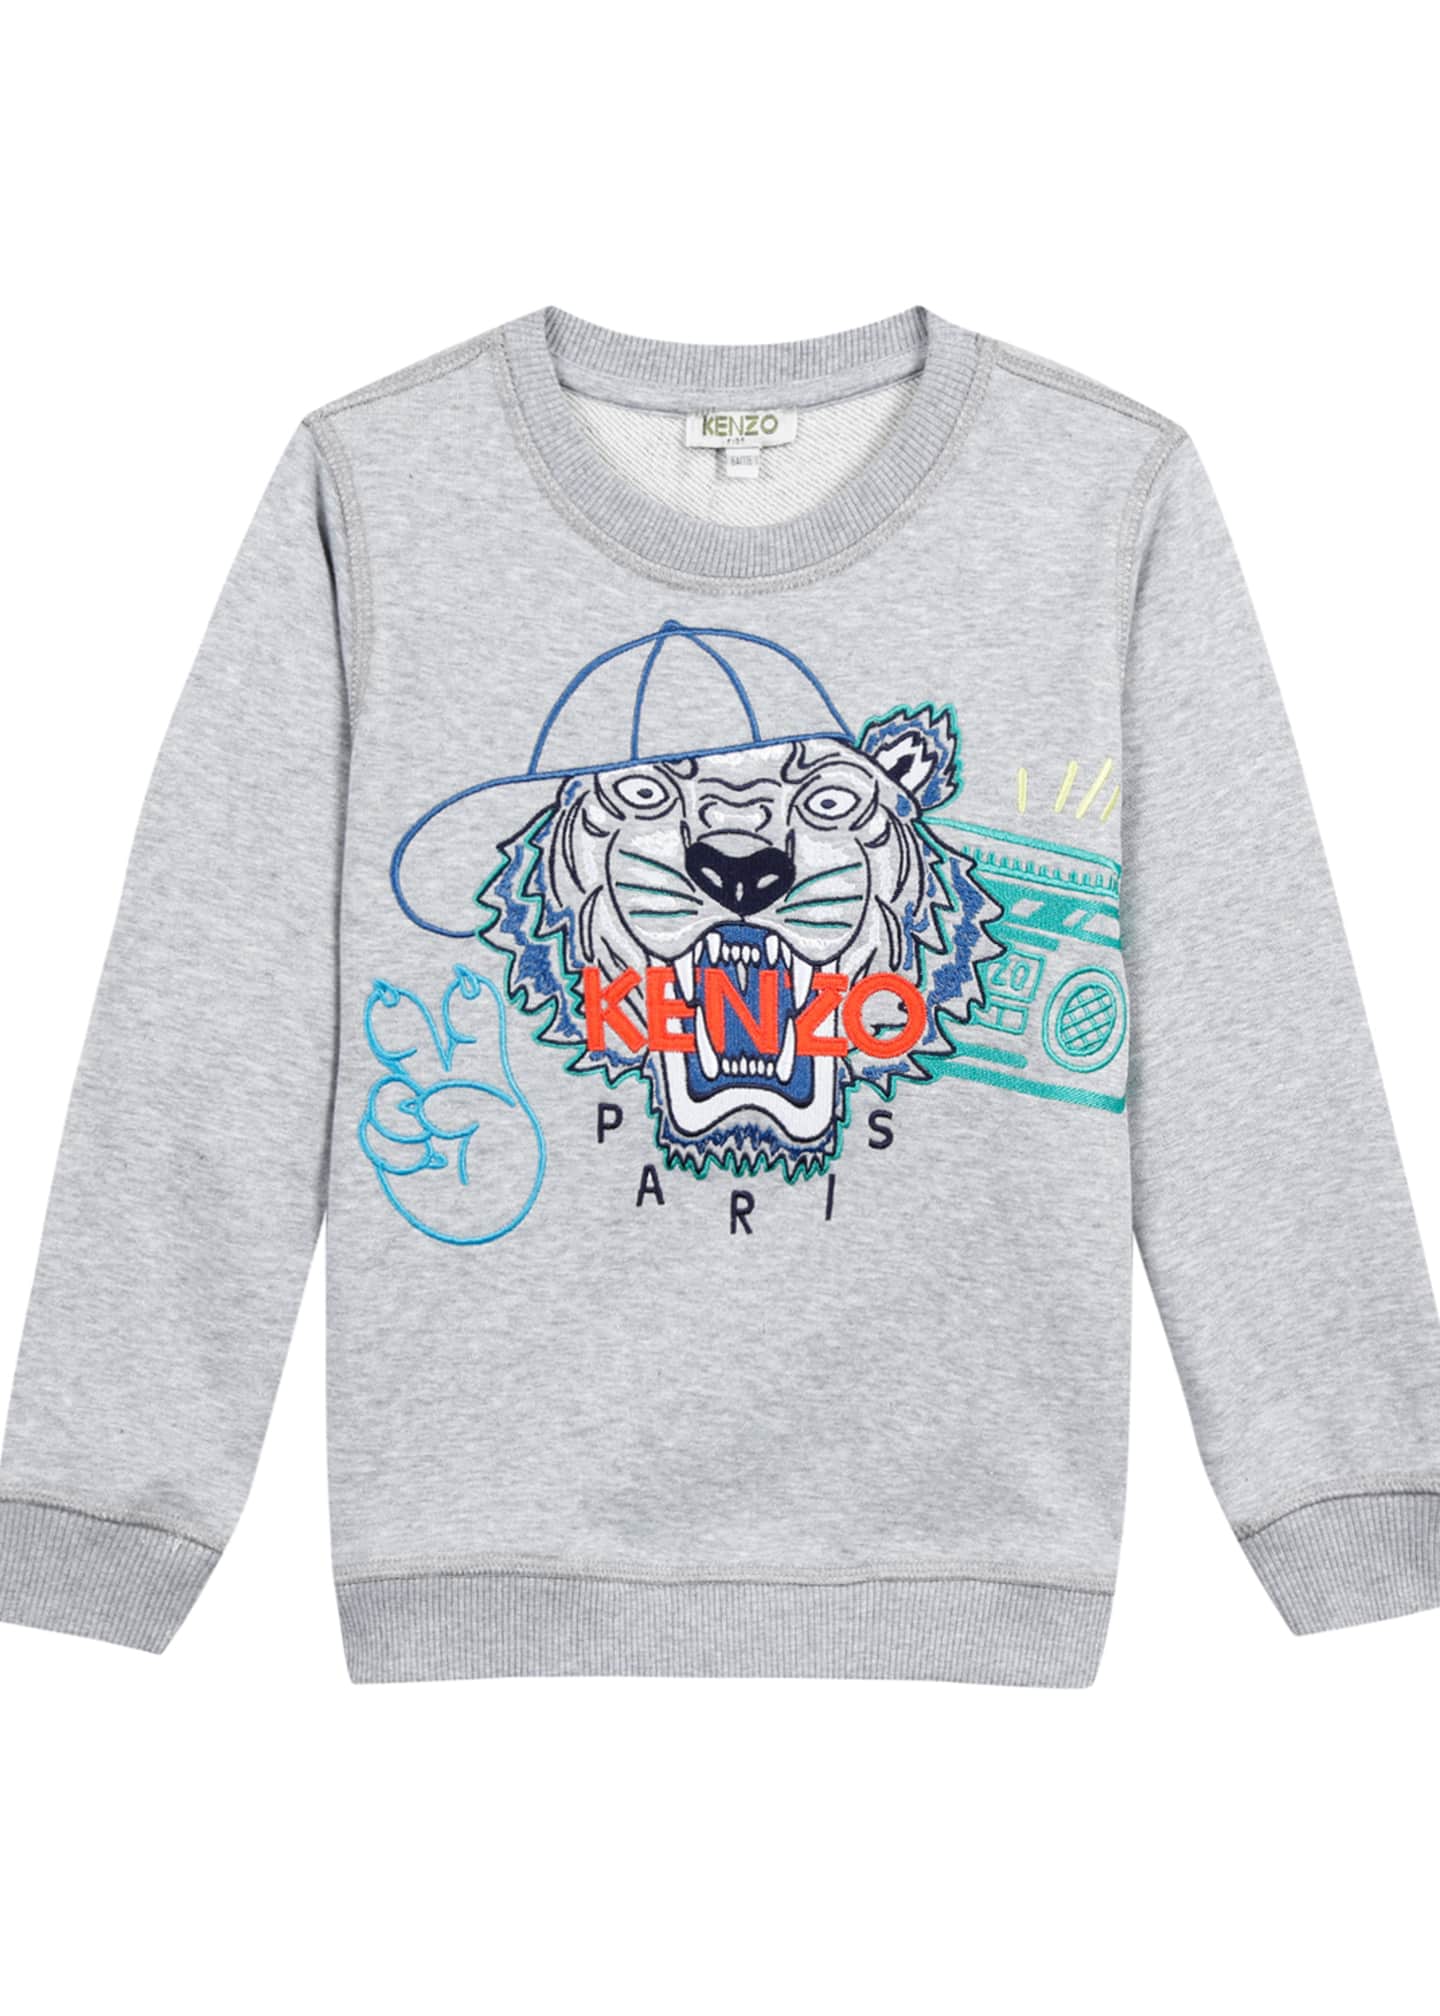 kenzo embroidered sweatshirt